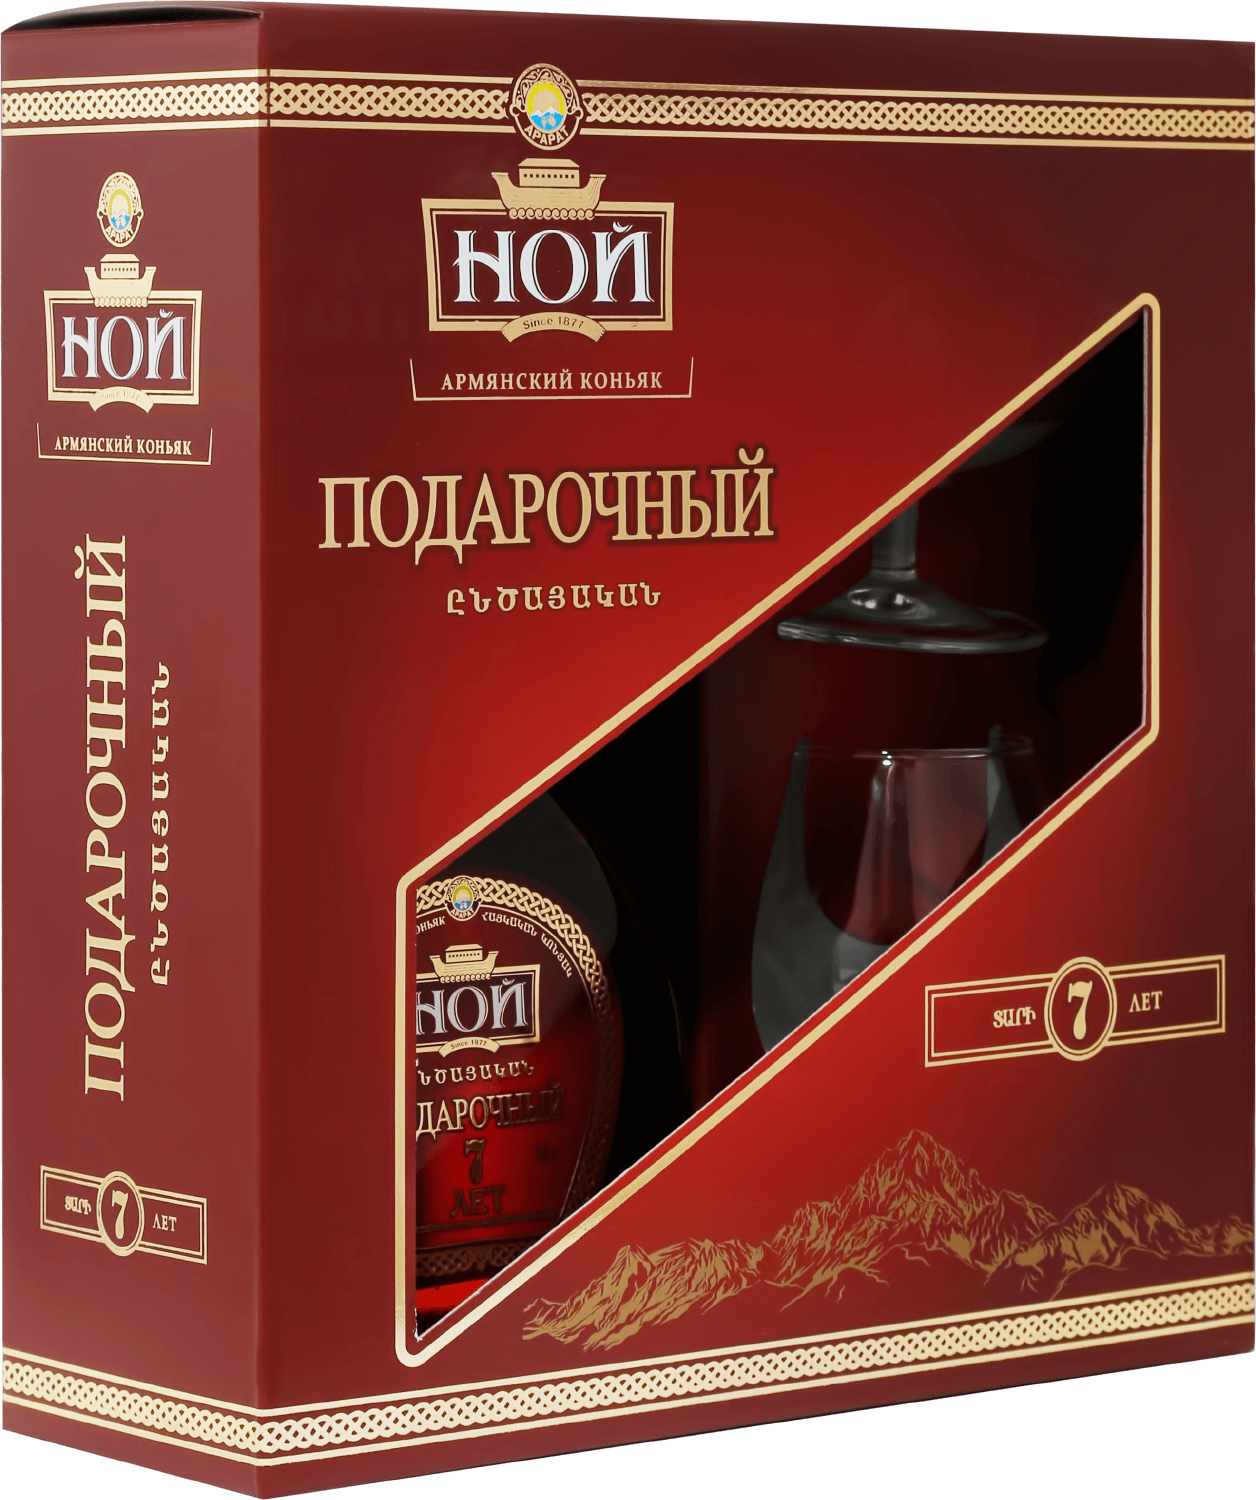 Noy Podarochniy Armenian Brandy 7 y.o. in gift box with two glasses noy tradicionniy armenian brandy 5 y o in gift box with two glasses